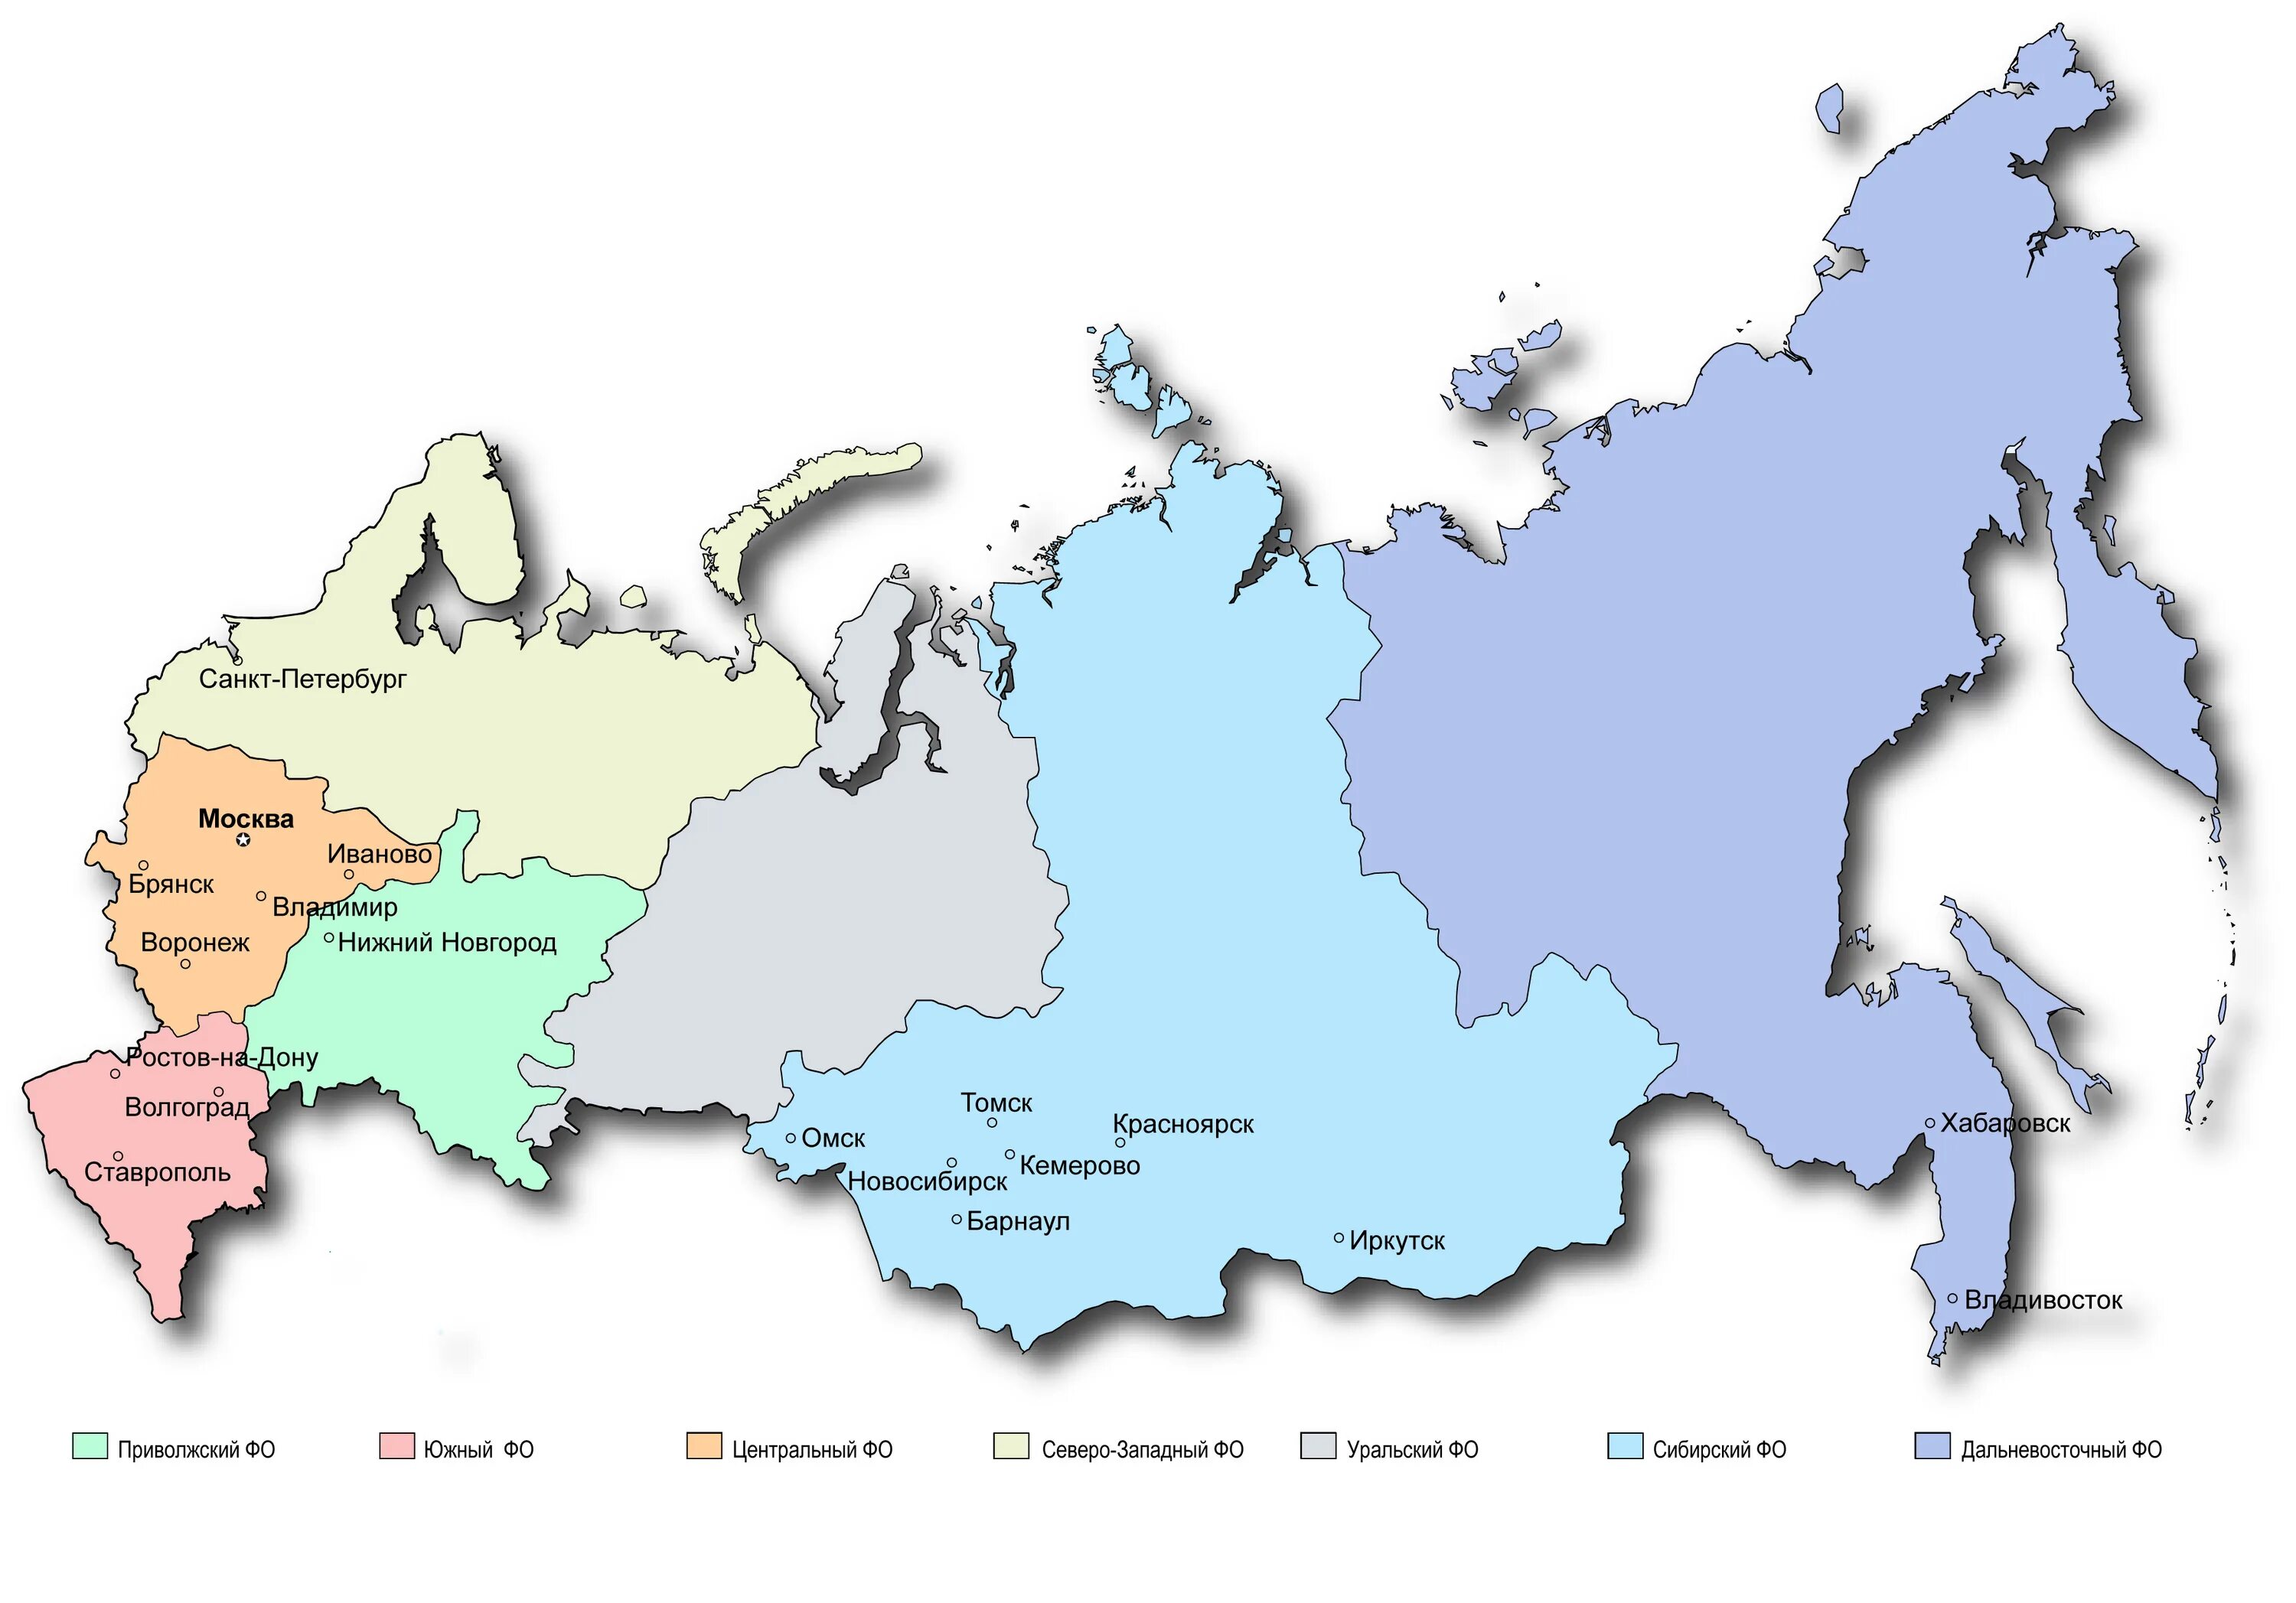 Карта России с регионами. Карта России с границами регионов. Карта областей России по областям. Карта России с областями и краями.